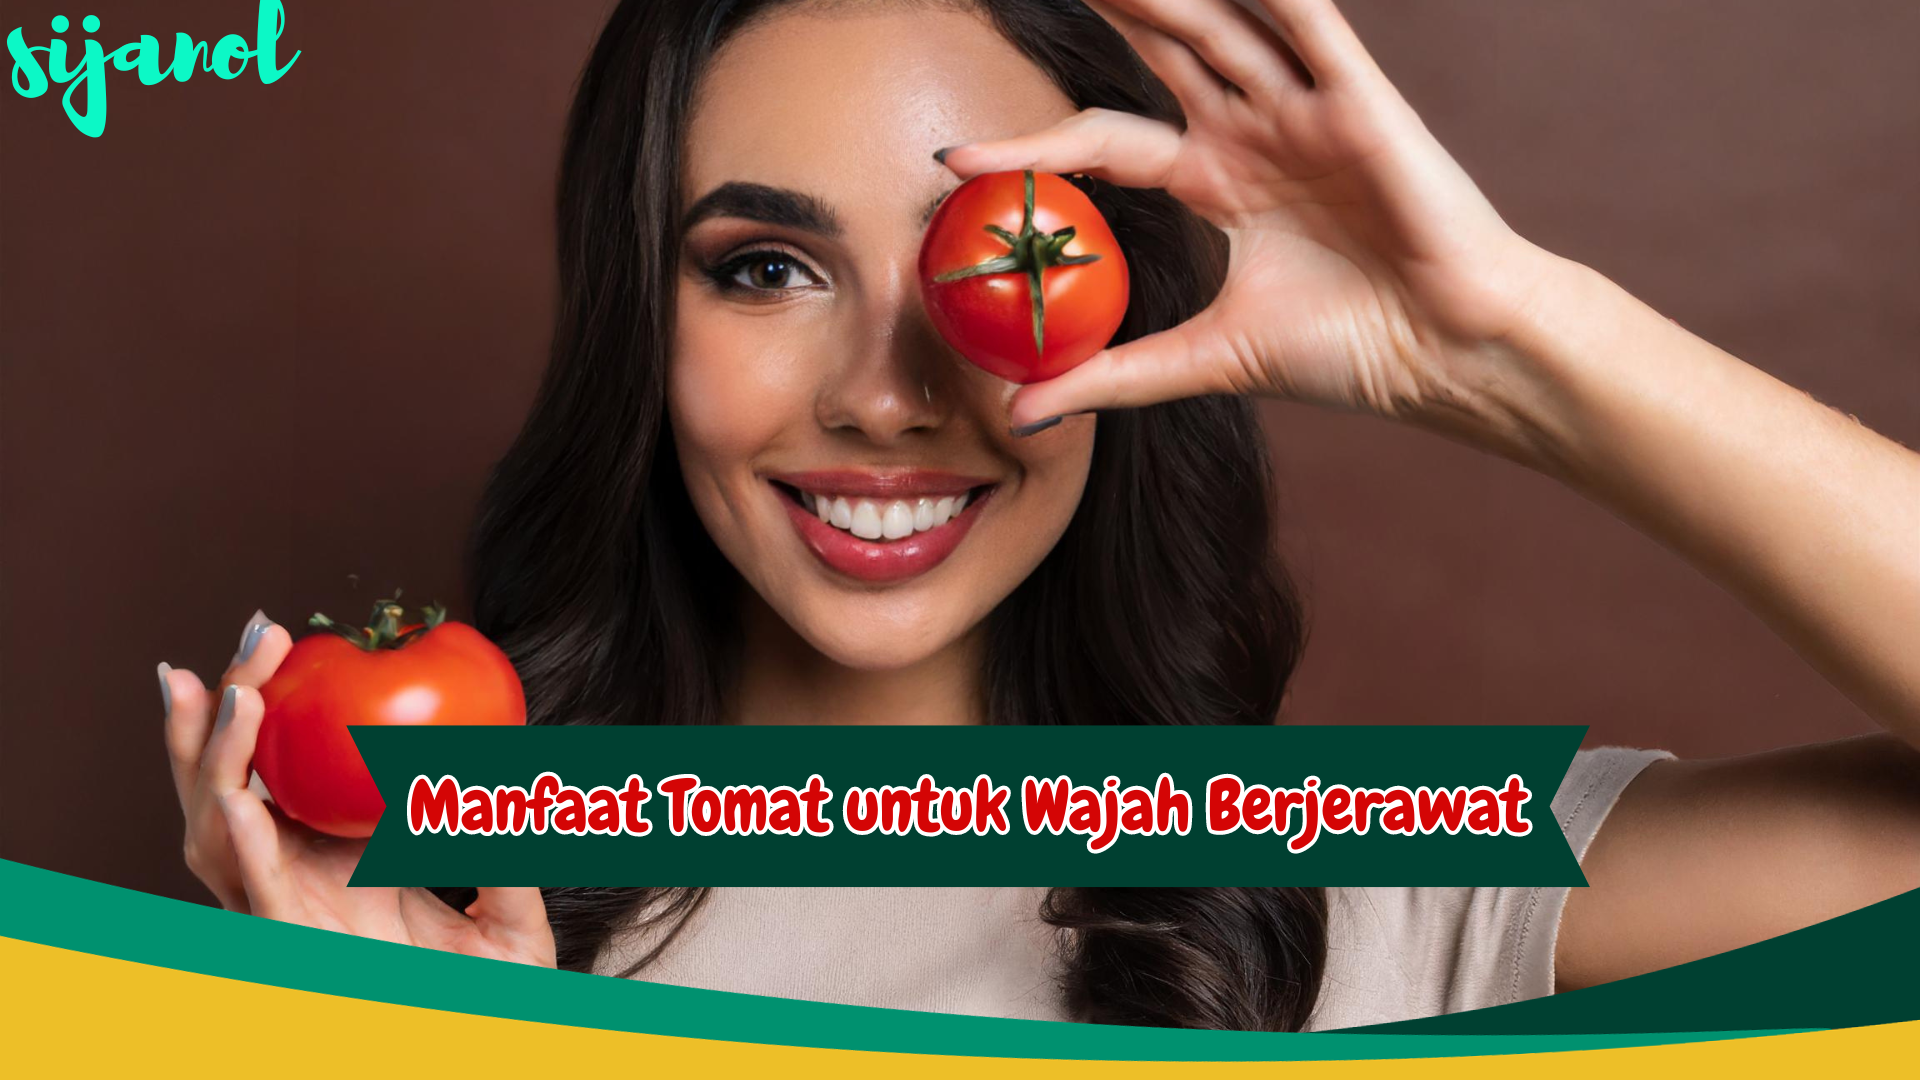 manfaat tomat untuk wajah berjerawat